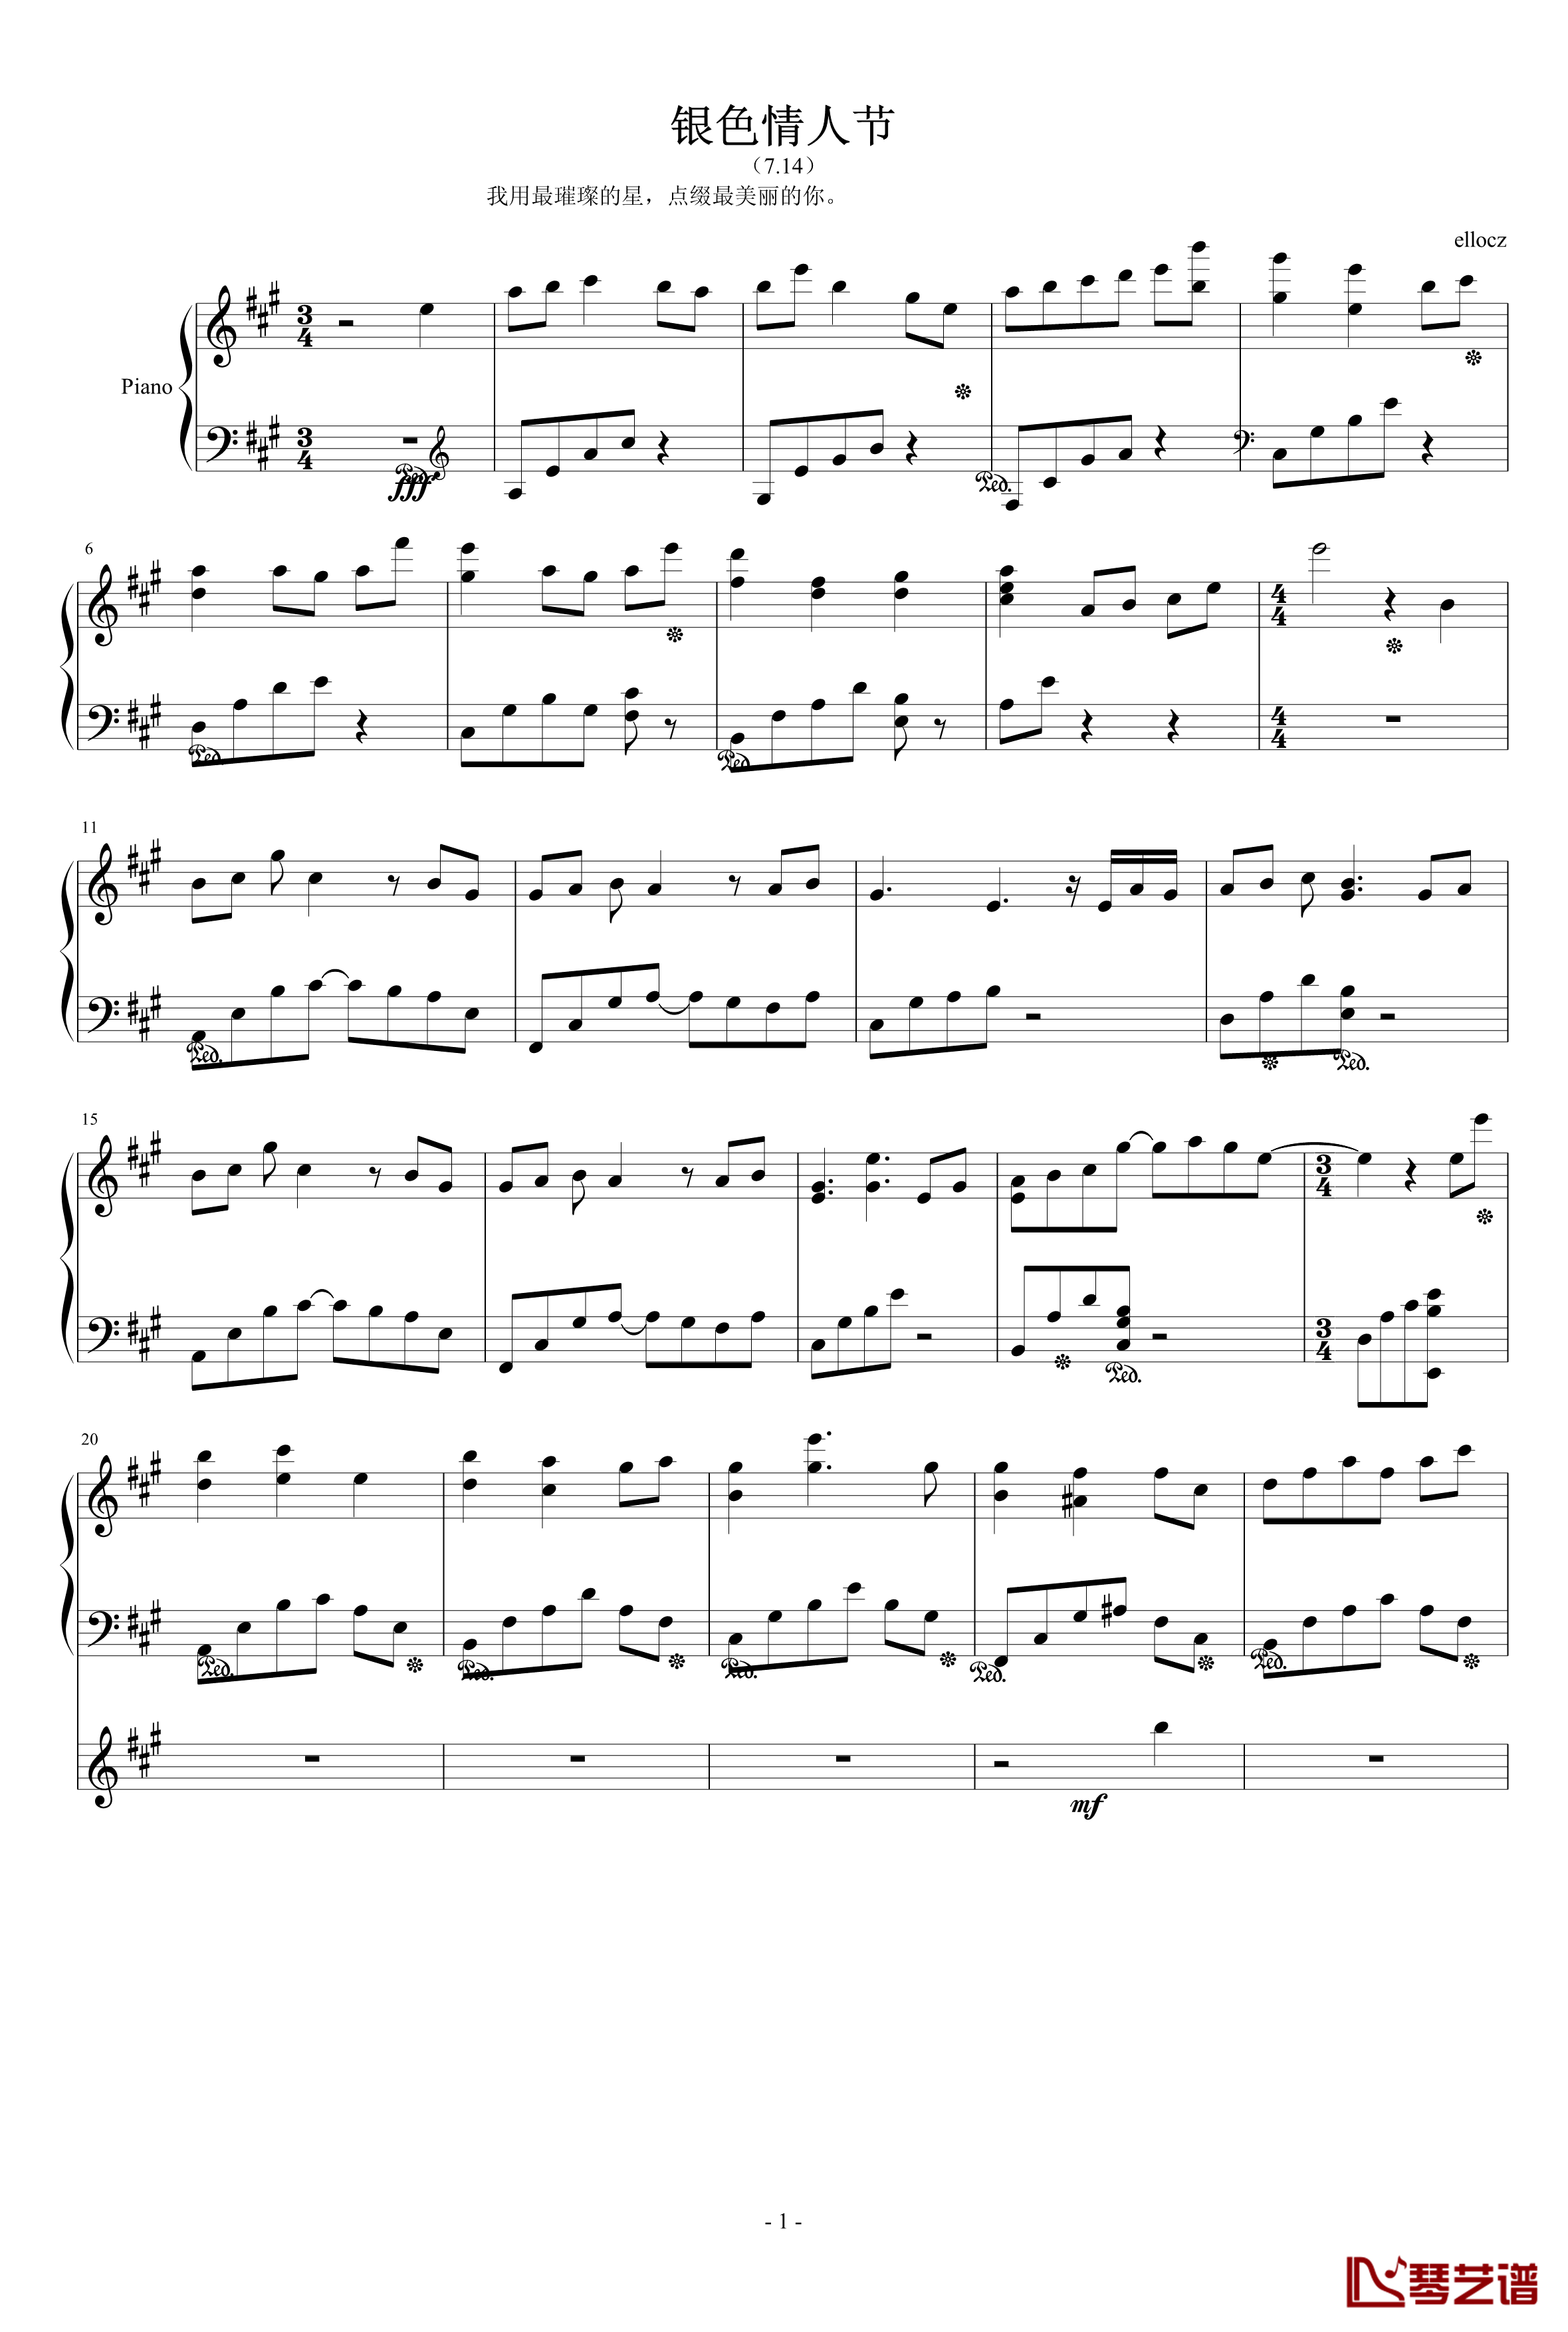 银色情人节钢琴谱-7.14-ellocz1